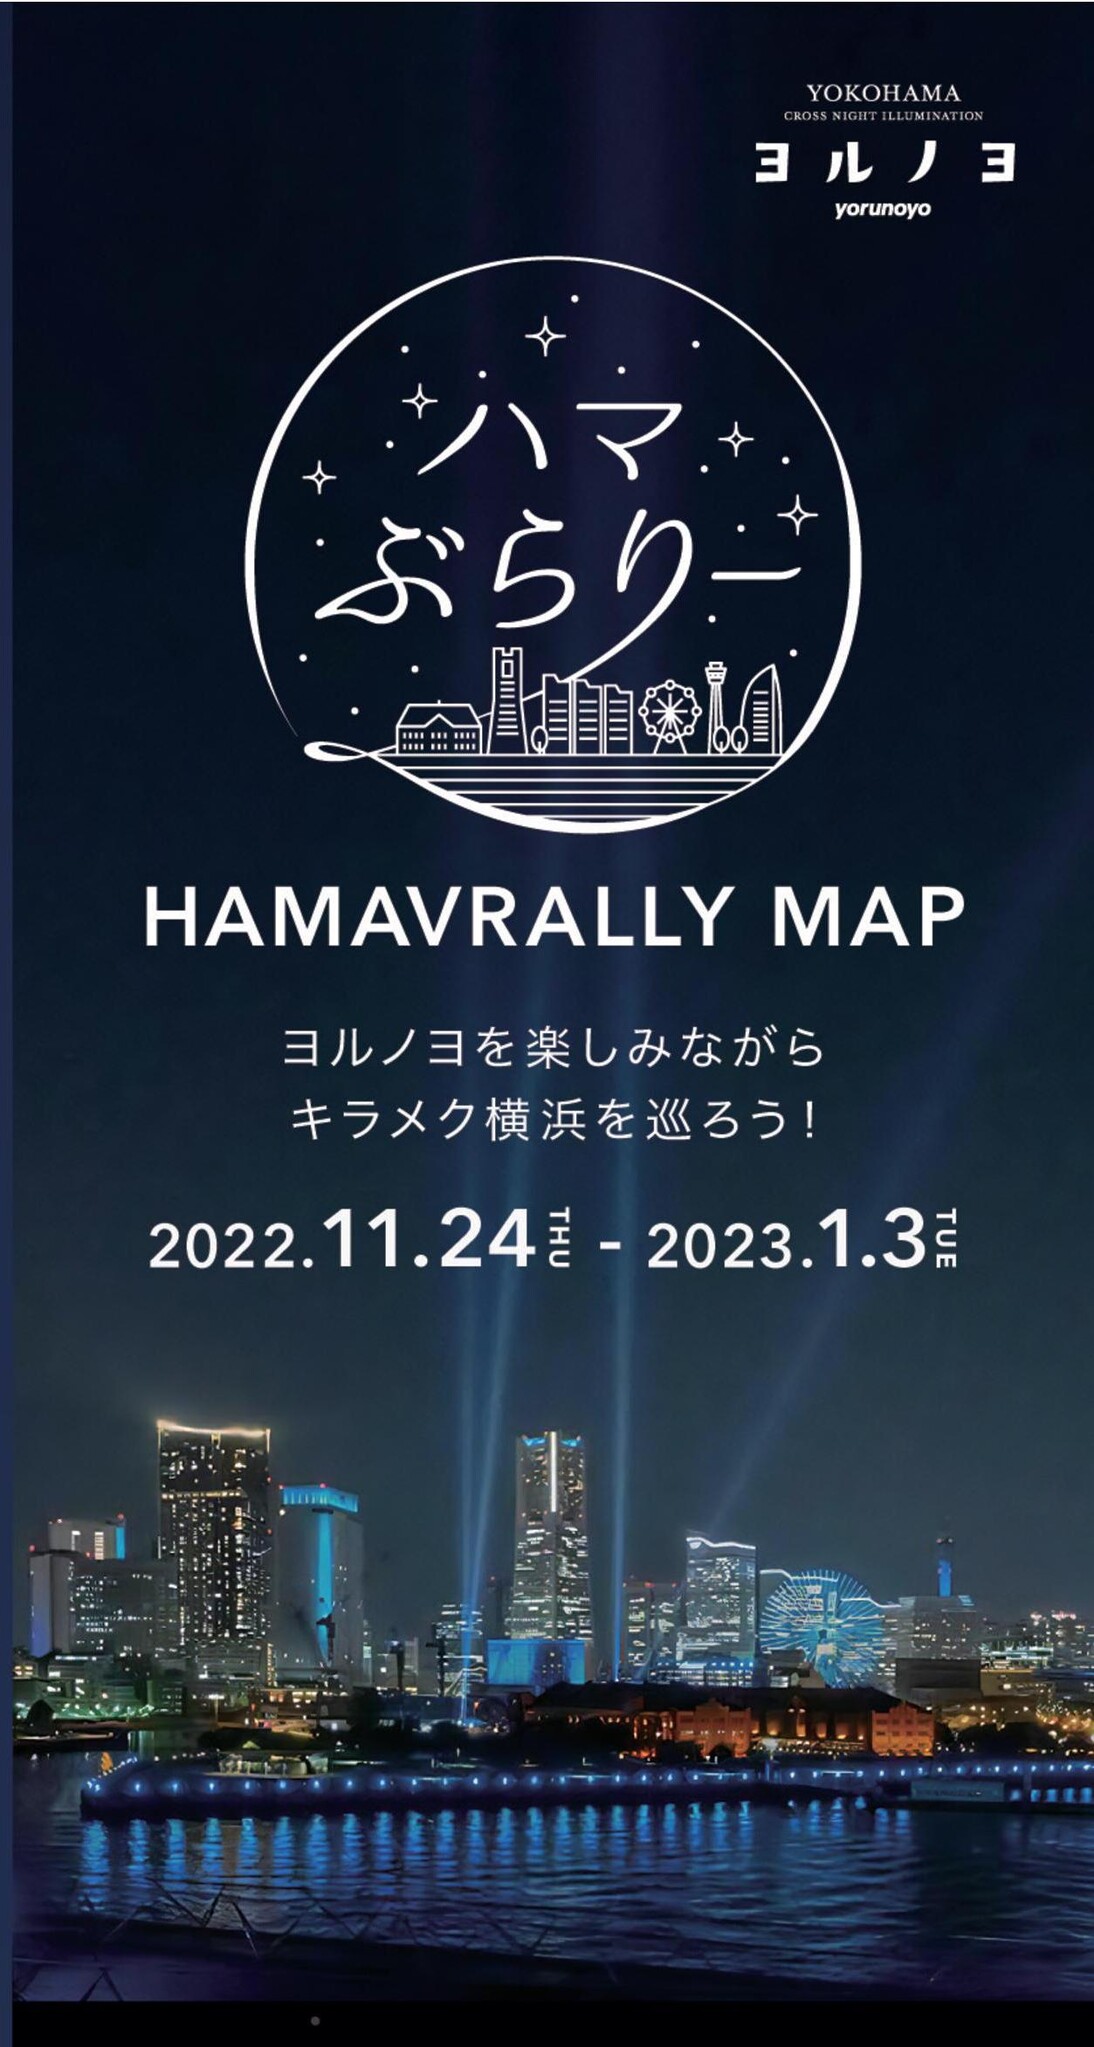 横浜の街を巡ってお得に楽しむキャンペーン「ハマぶらりー」開催